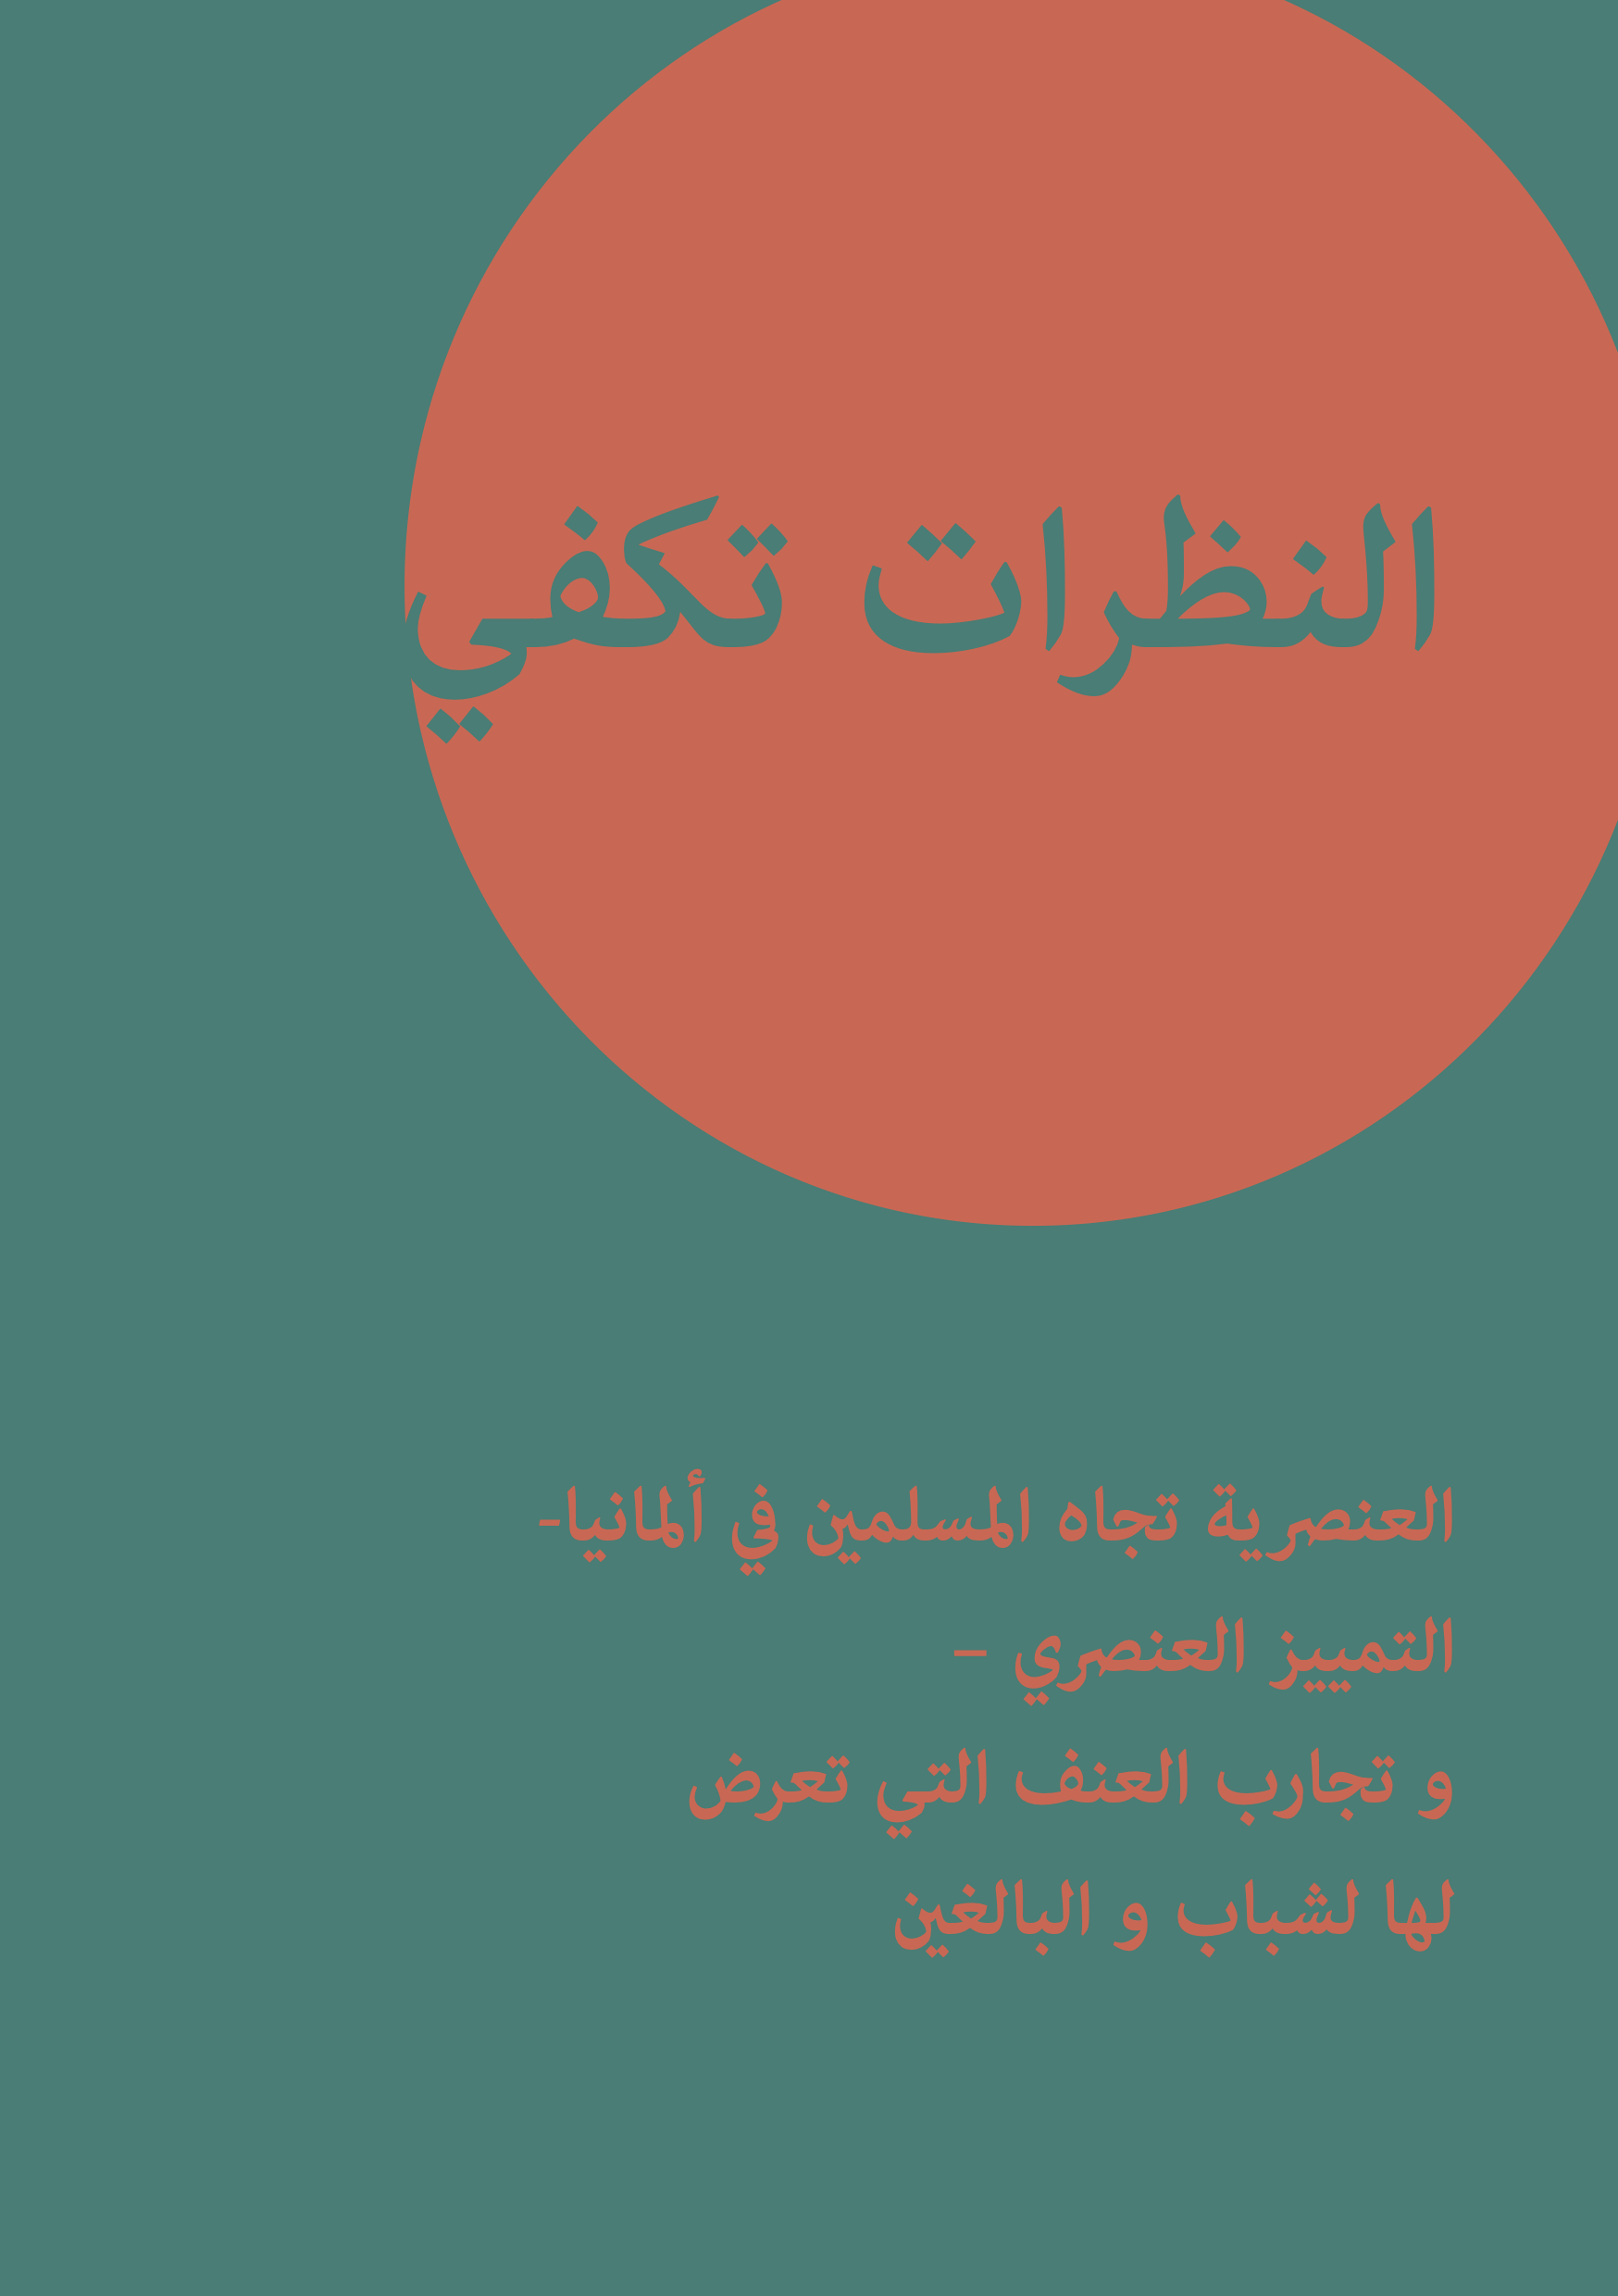 Broschüre 'Blicke reichen aus' in arabischer Fassung